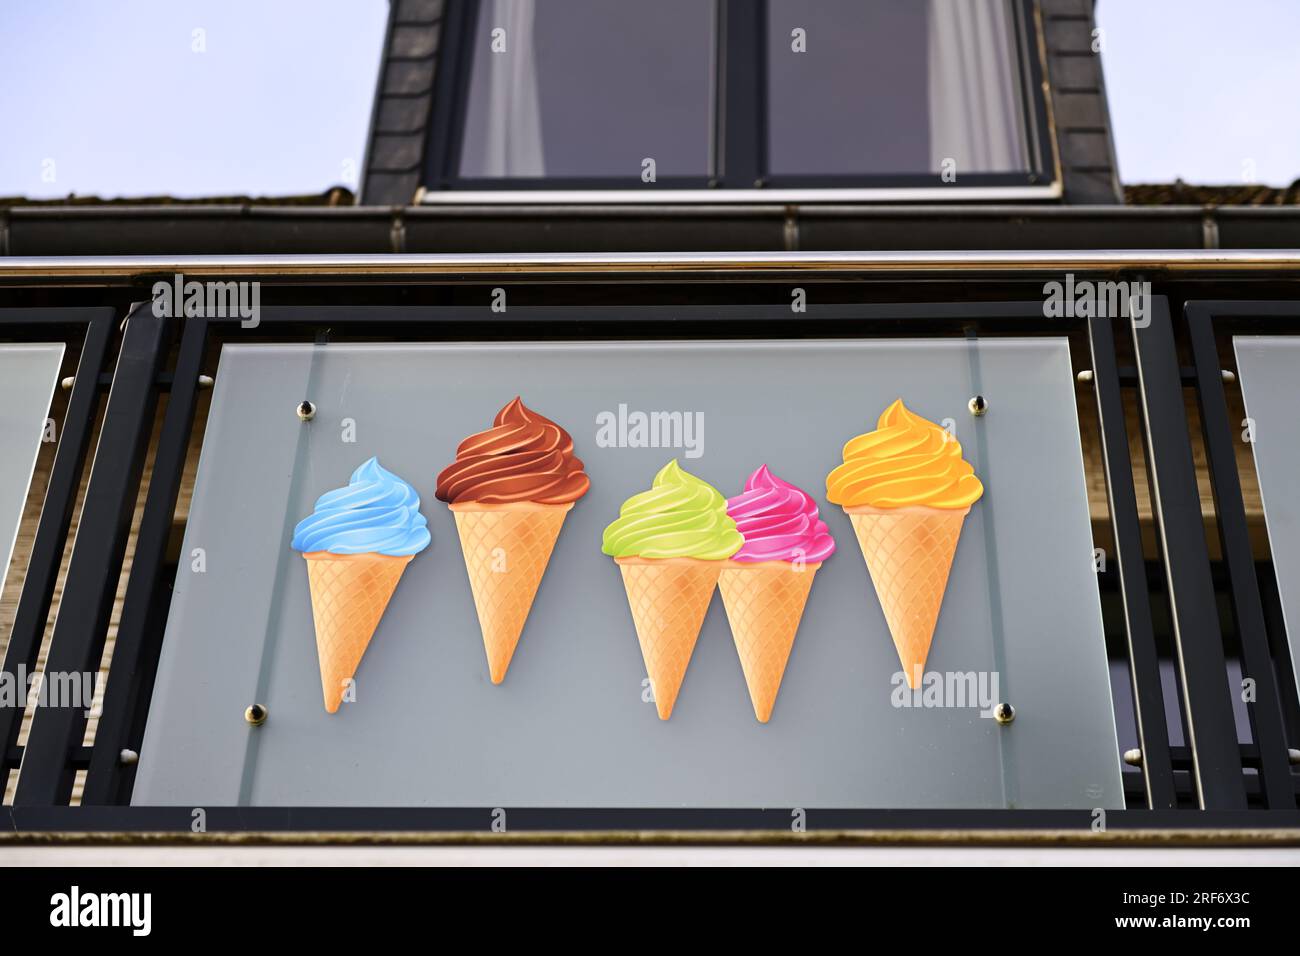 EIS-Werbung an einem Eiscafe Foto Stock